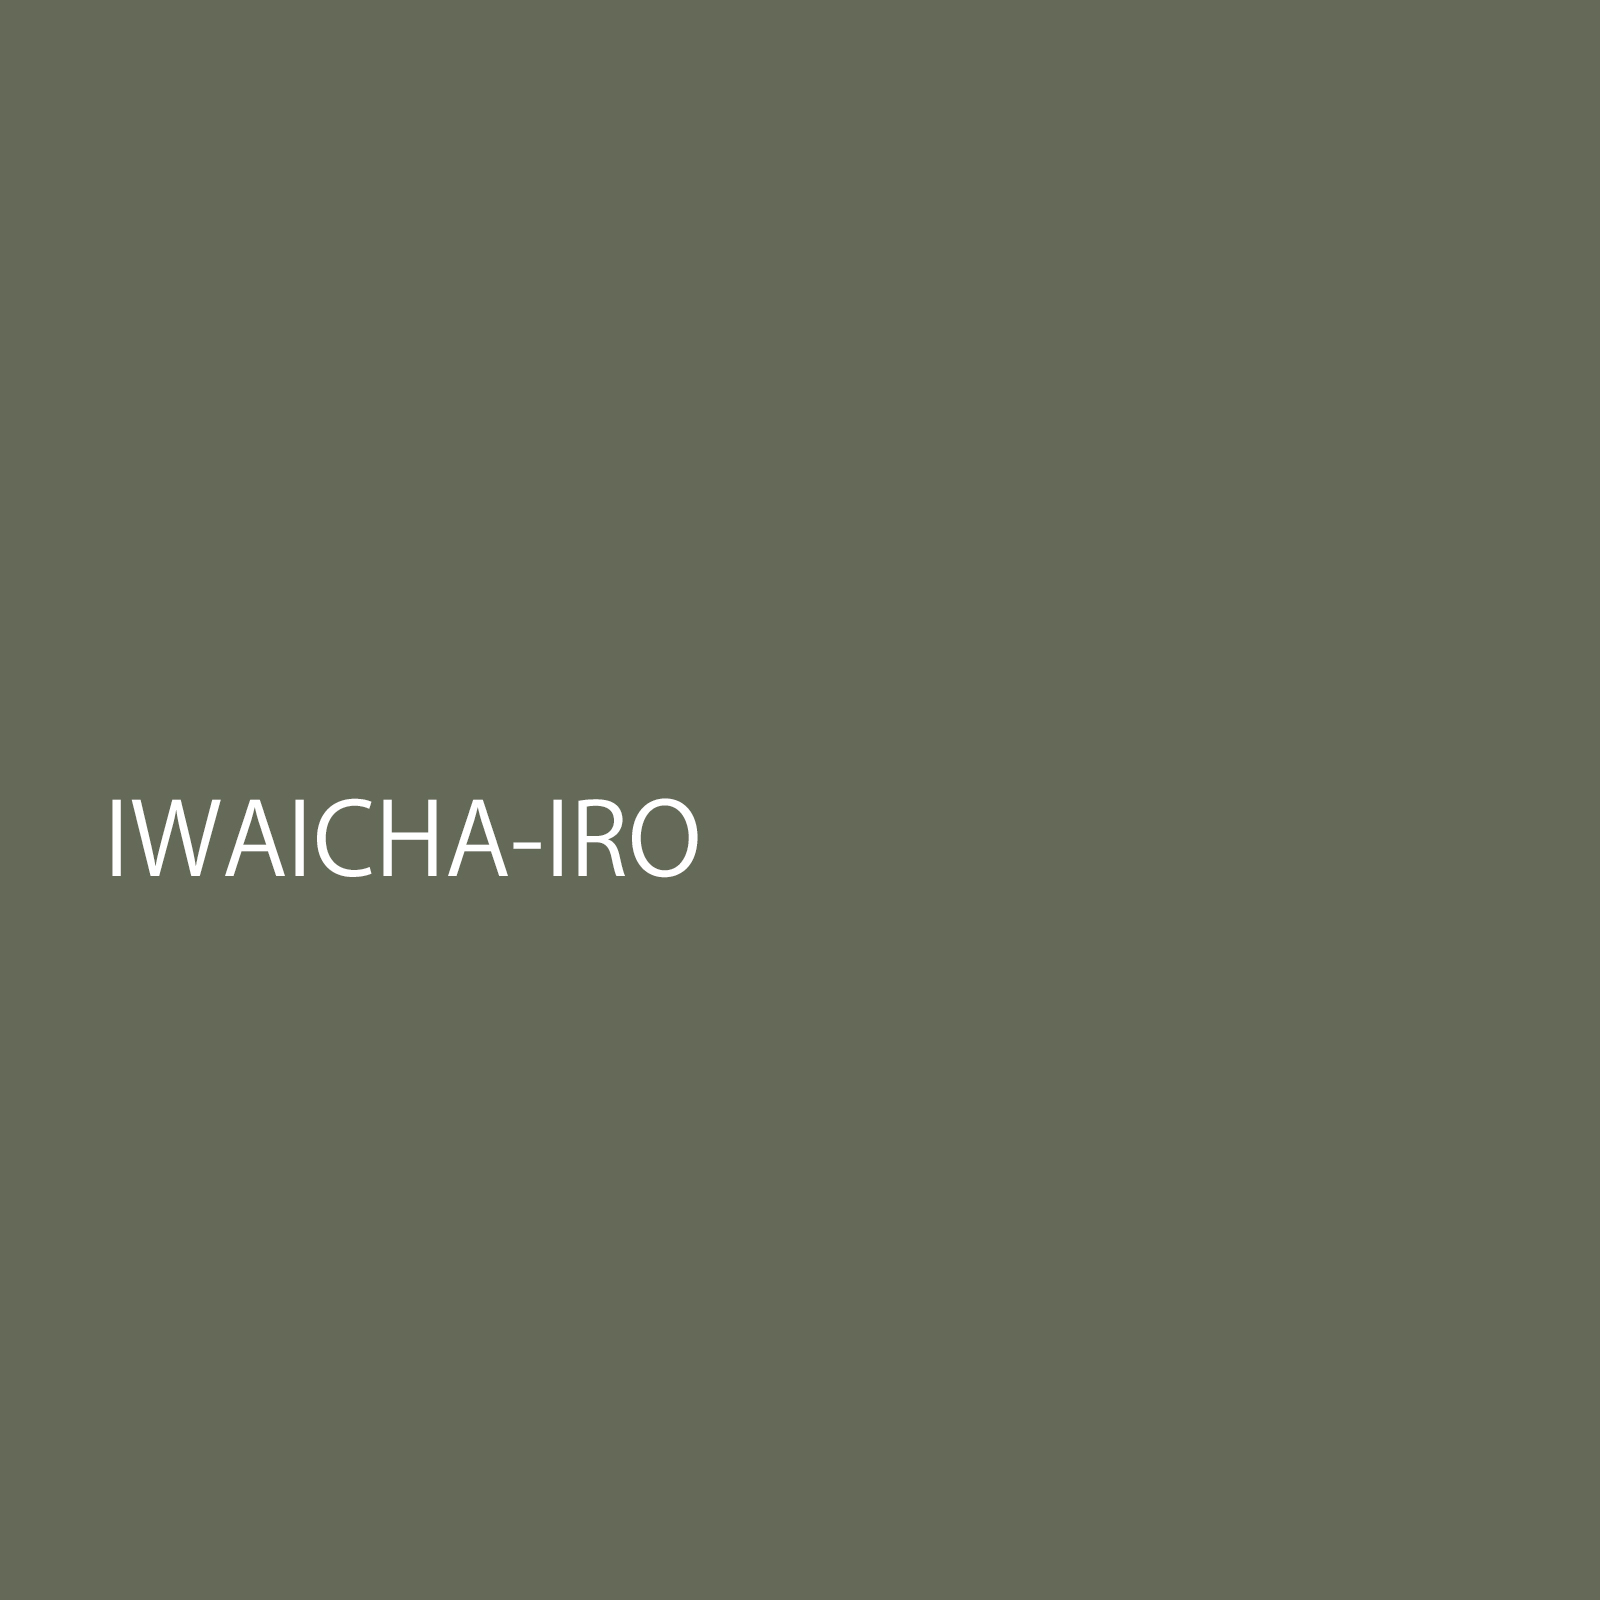 iwaichairo.jpg